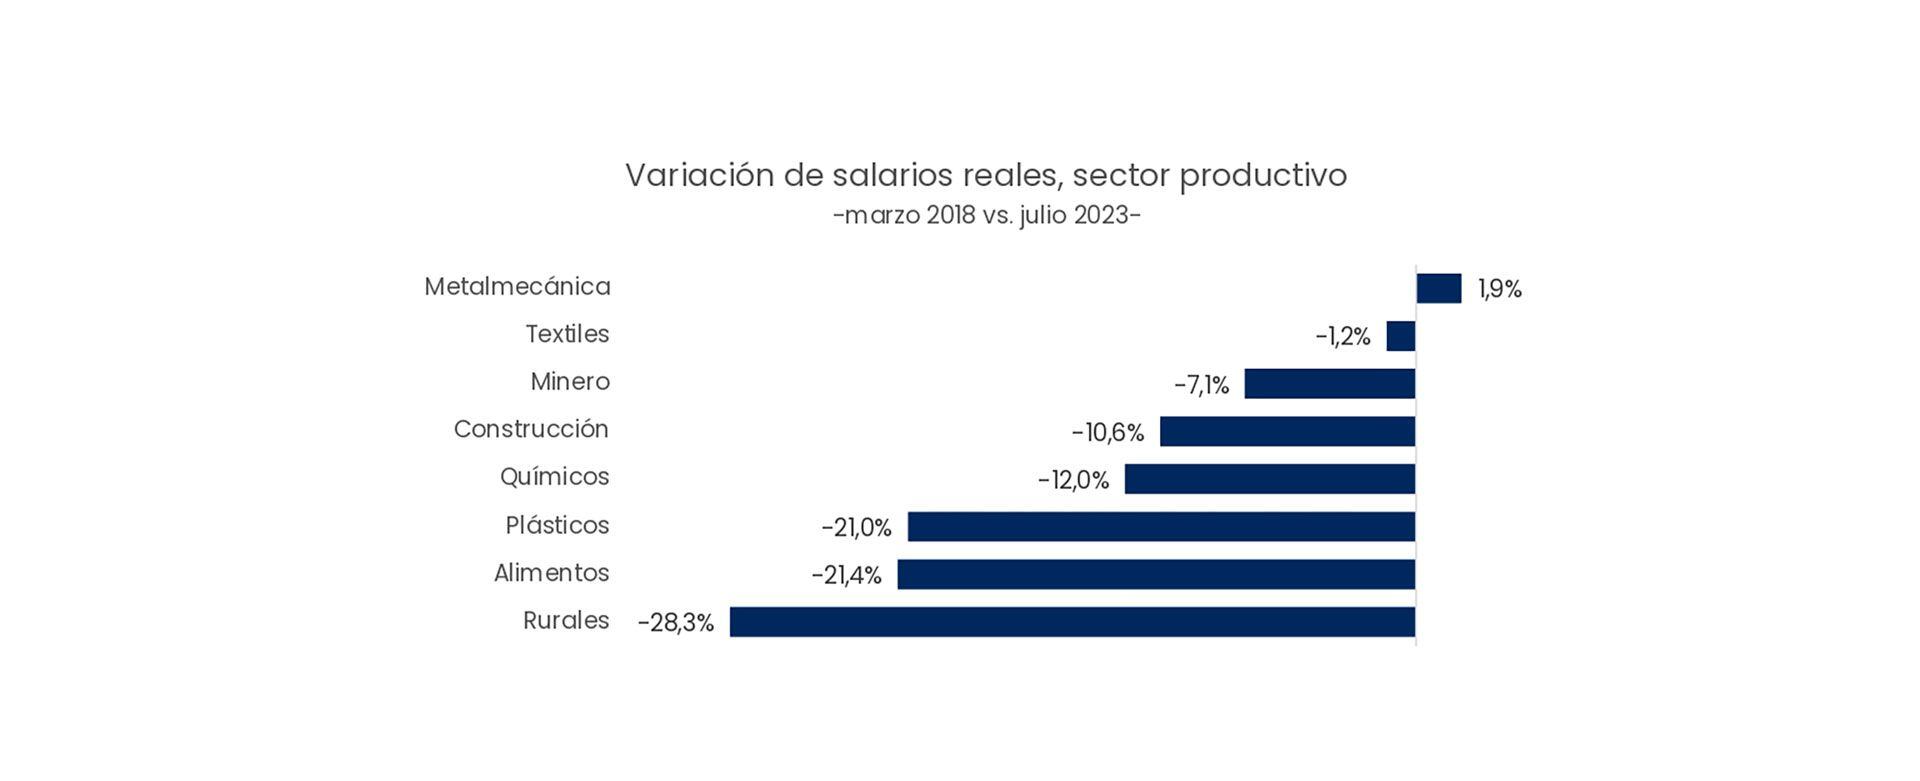 Variación de salarios reales, sector productivo -marzo 2018 vs. julio 2023-